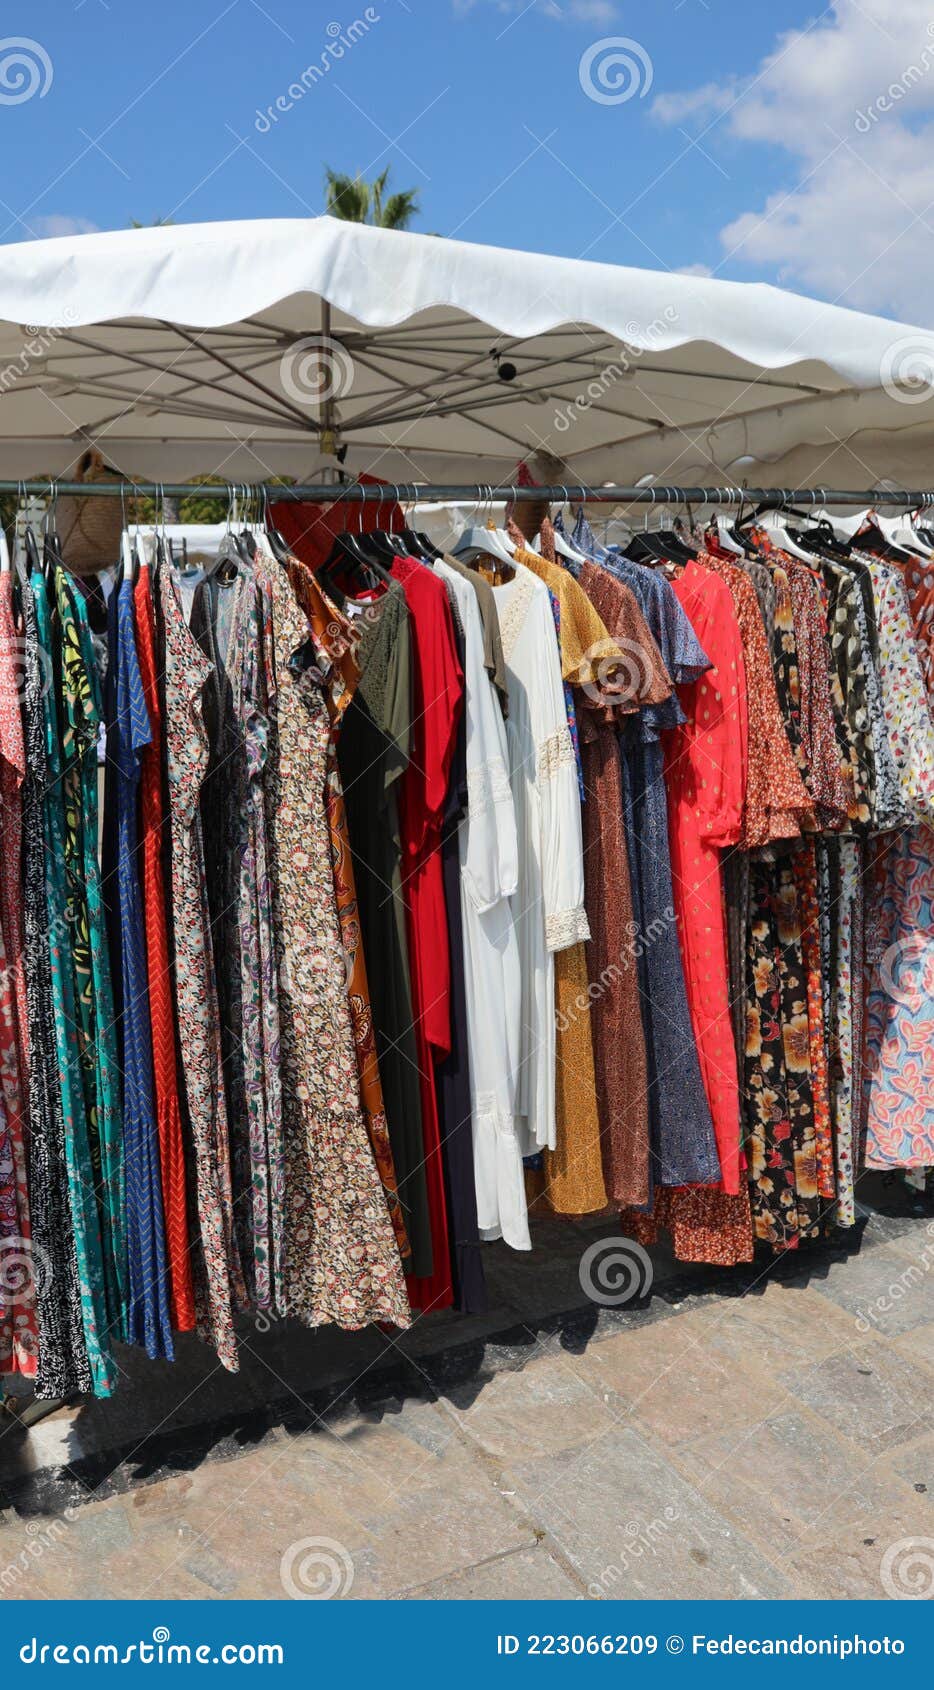 Ropa a La Venta En Puestos De Mercado Al Aire Libre Imagen de archivo -  Imagen de ropa, mercado: 223066209